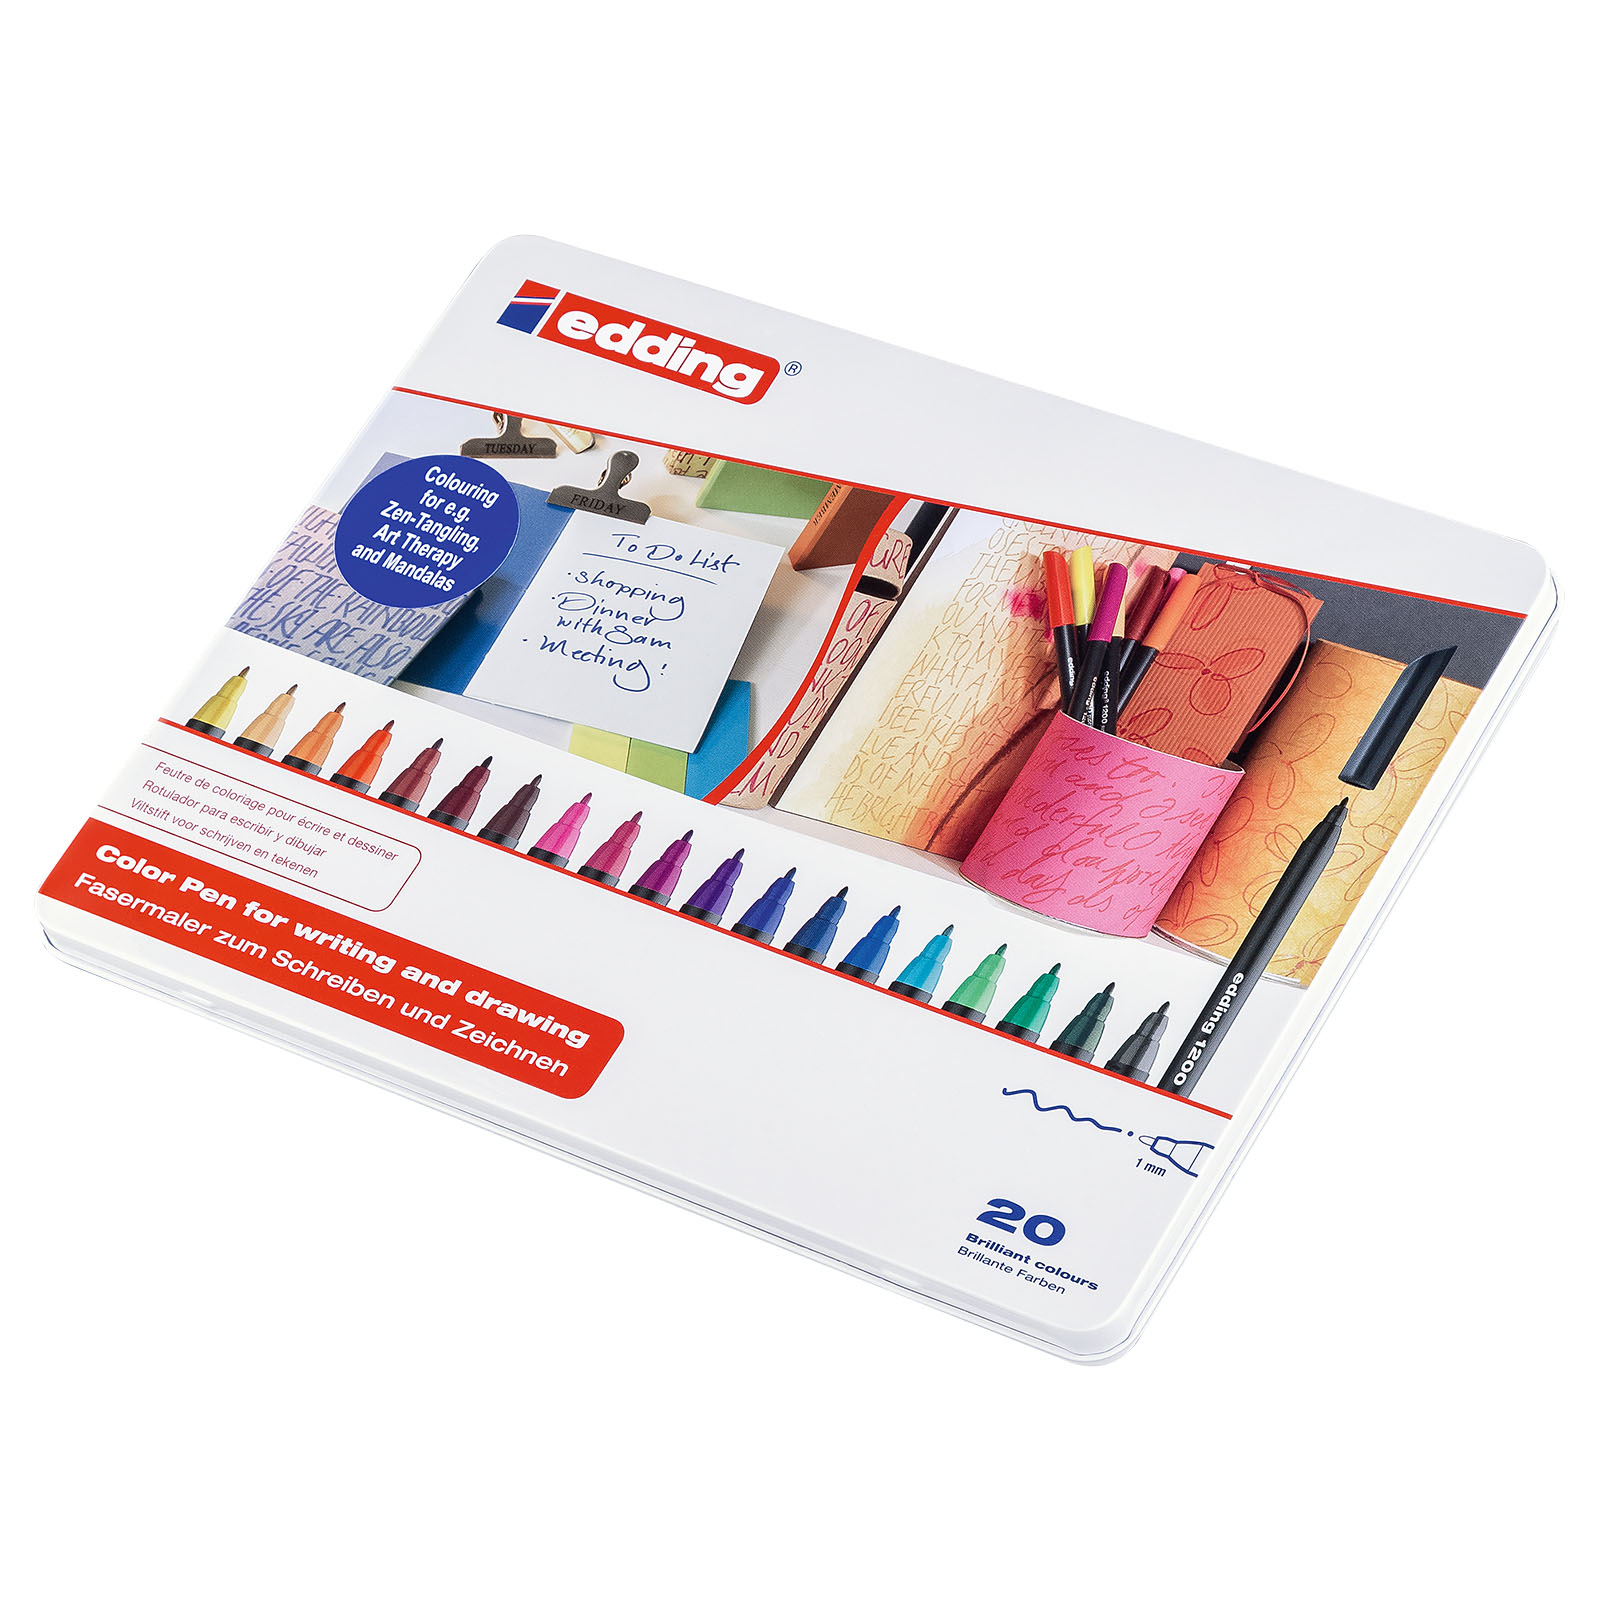 Edding 1200 • Colour pen fine 0.5-1mm Assortment 20pcs